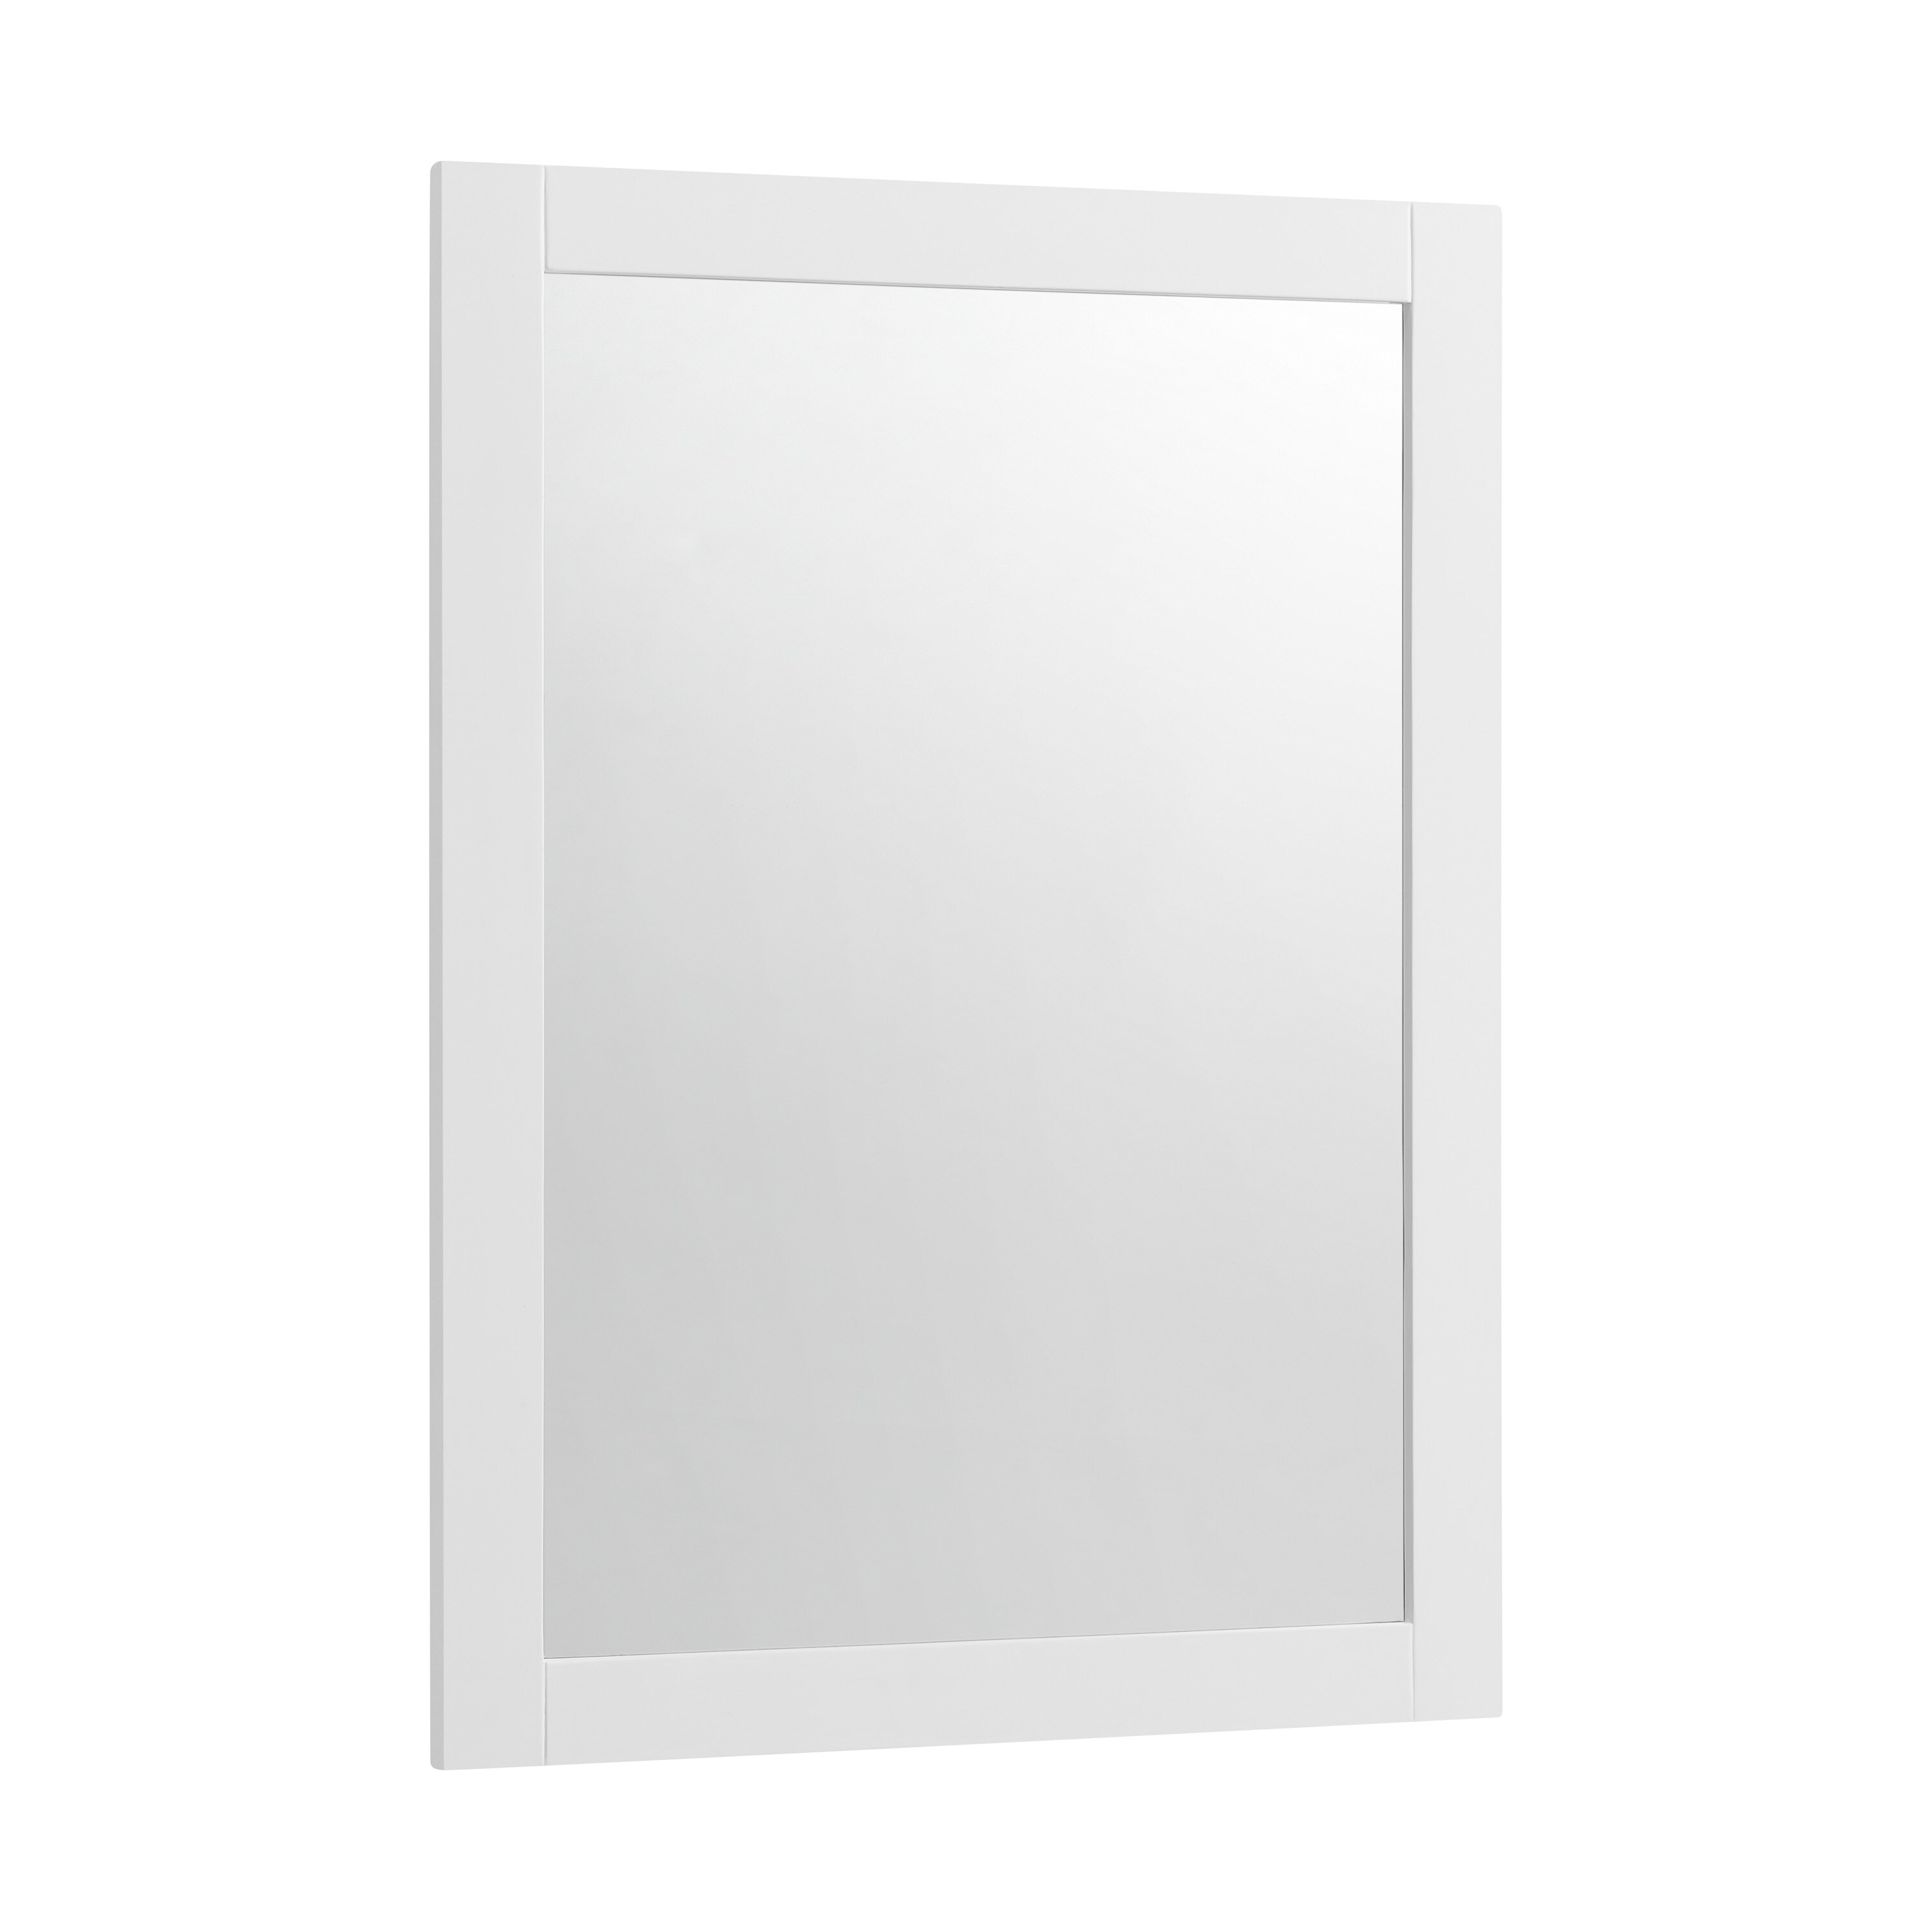 allen + roth Rowan 22-in x 30-in Swan White Framed Bathroom Vanity Mirror at